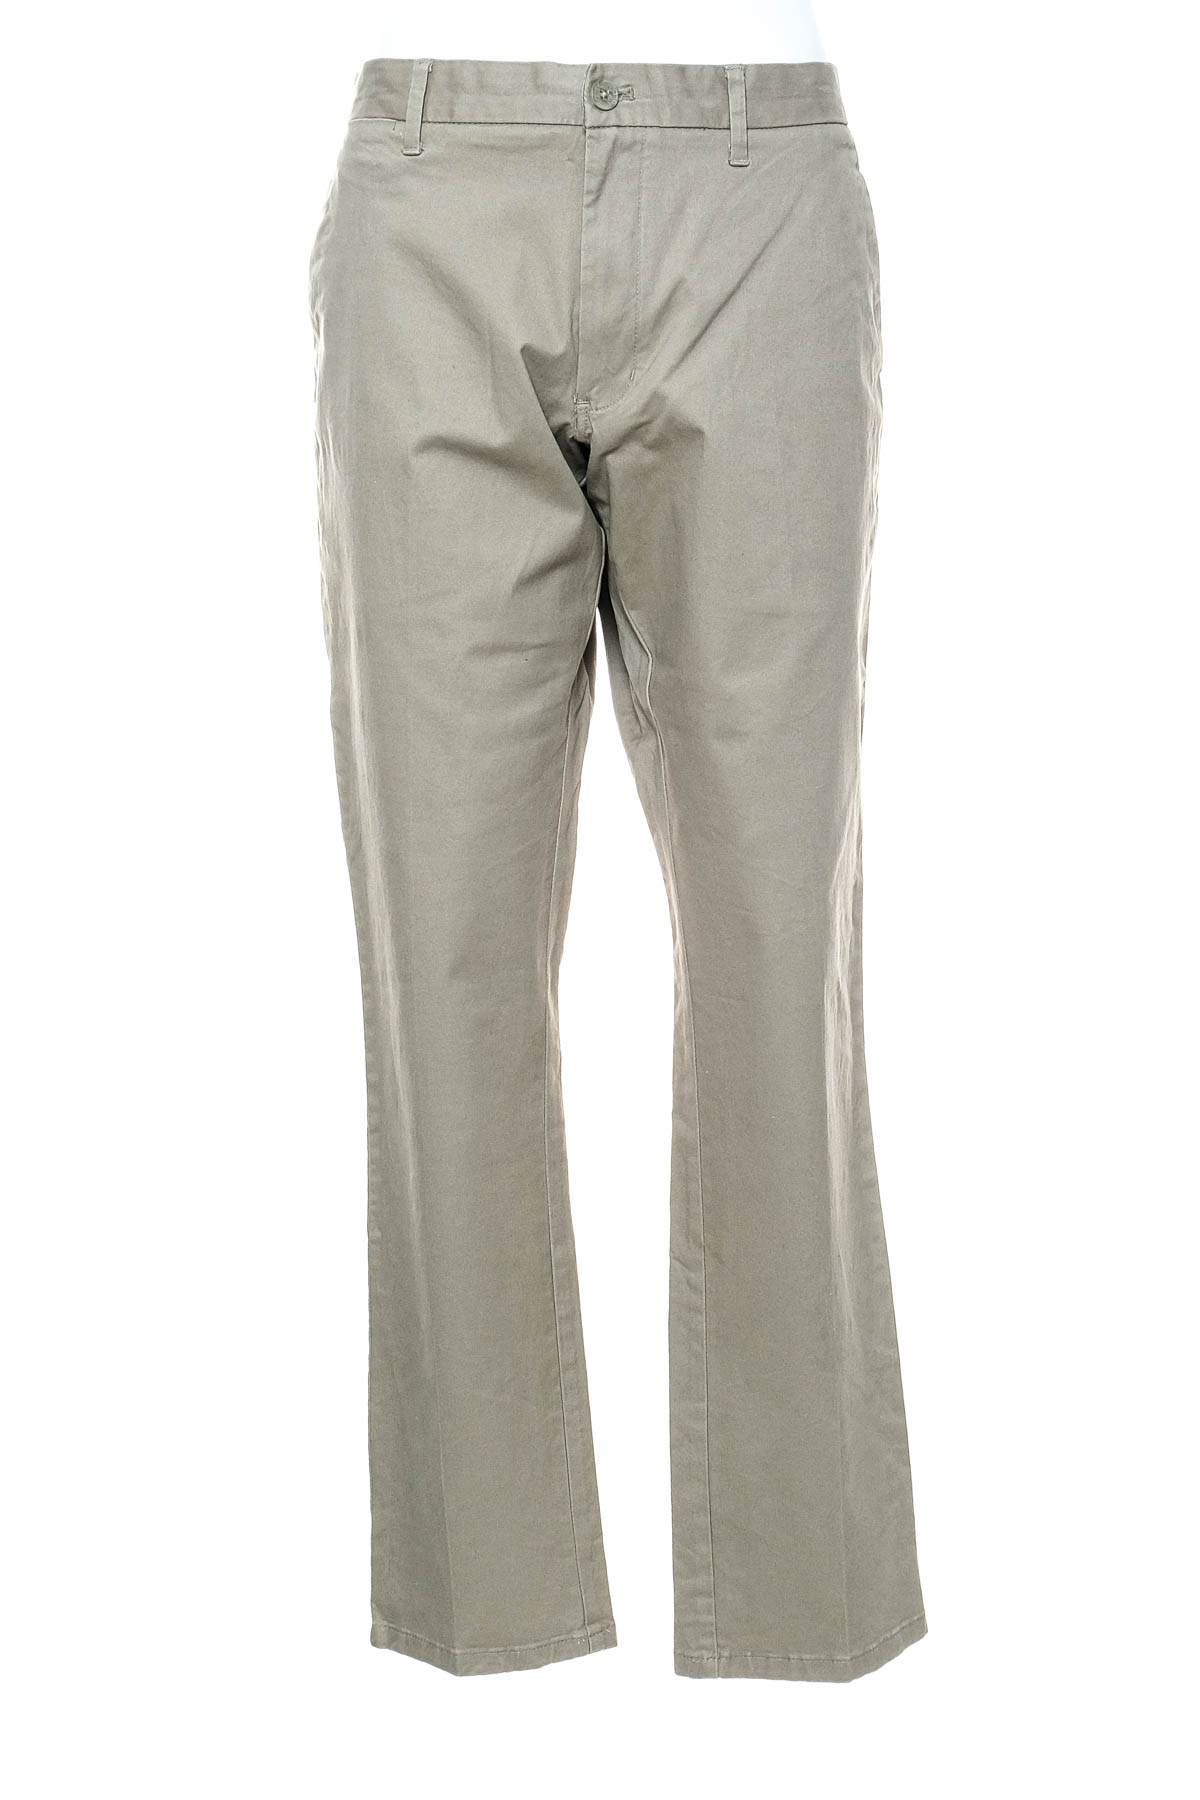 Pantalon pentru bărbați - Calvin Klein - 0